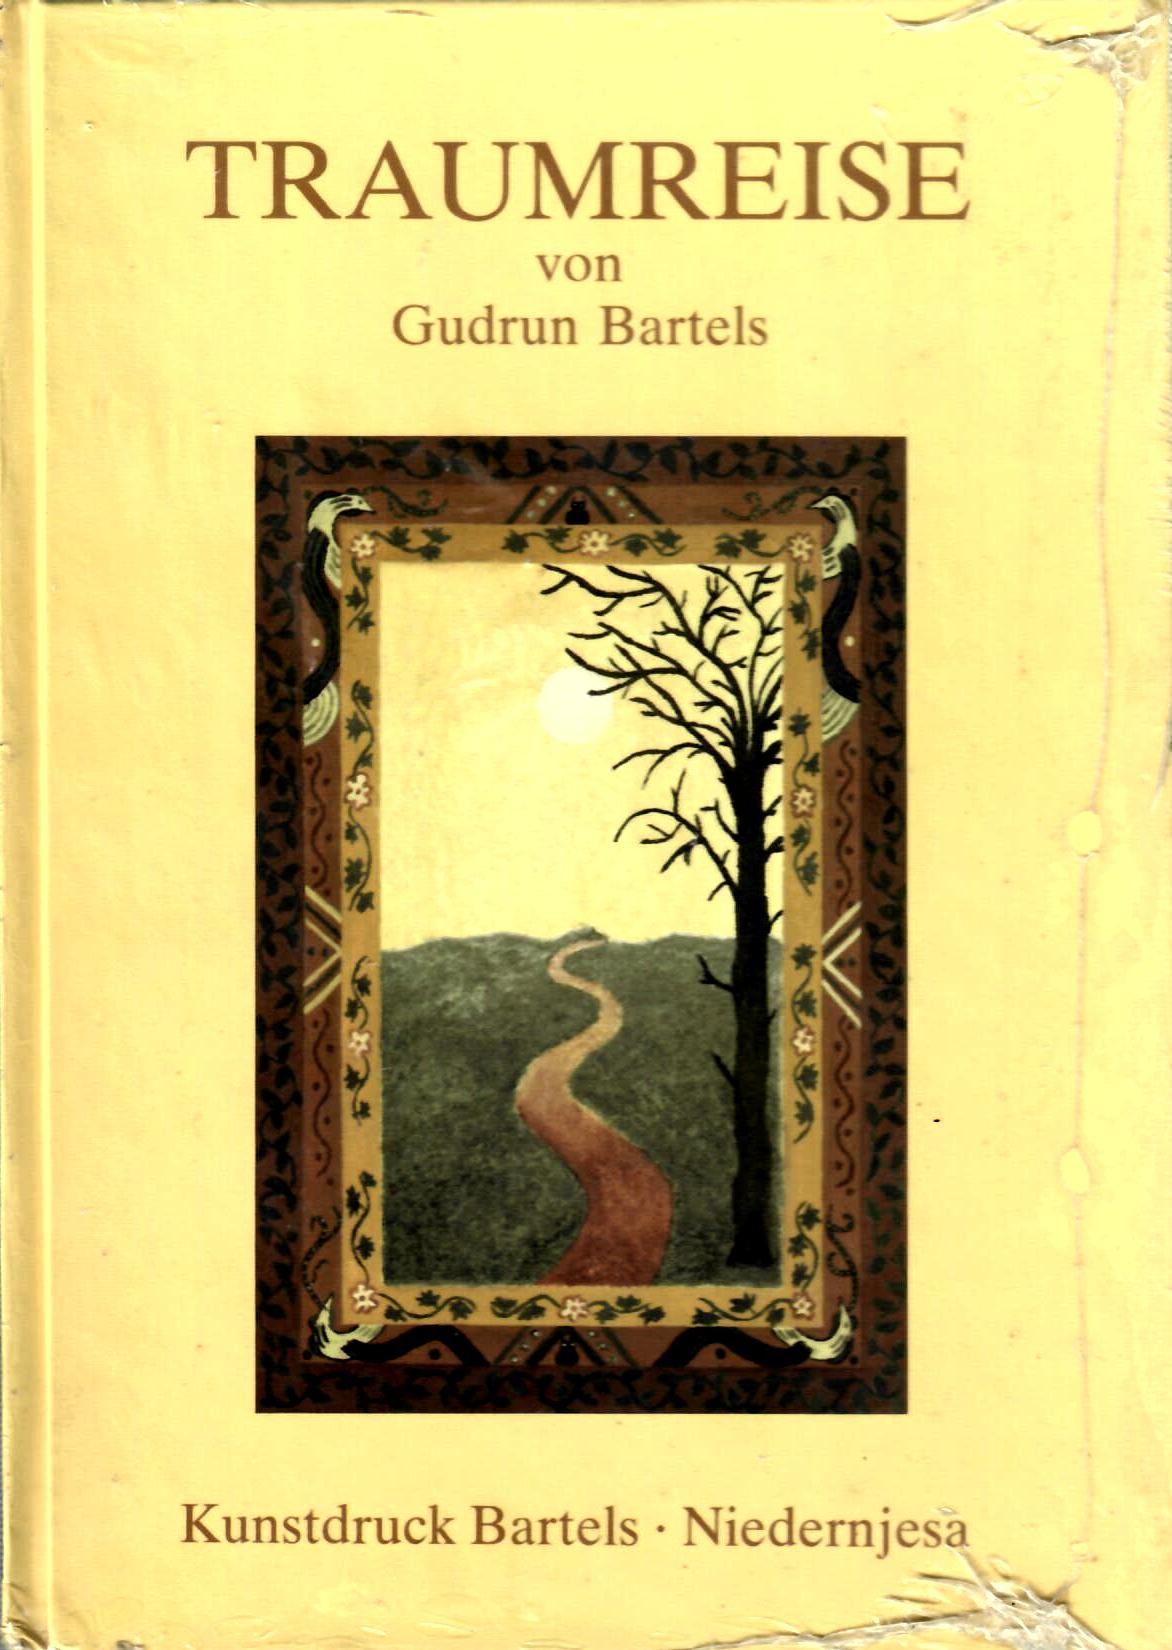 Bartels, Gudrun   : Traumreise : Kunstdruck Bartels Niedernjesa 1982 : 32 Seiten : Neu von Gudrun Bartels